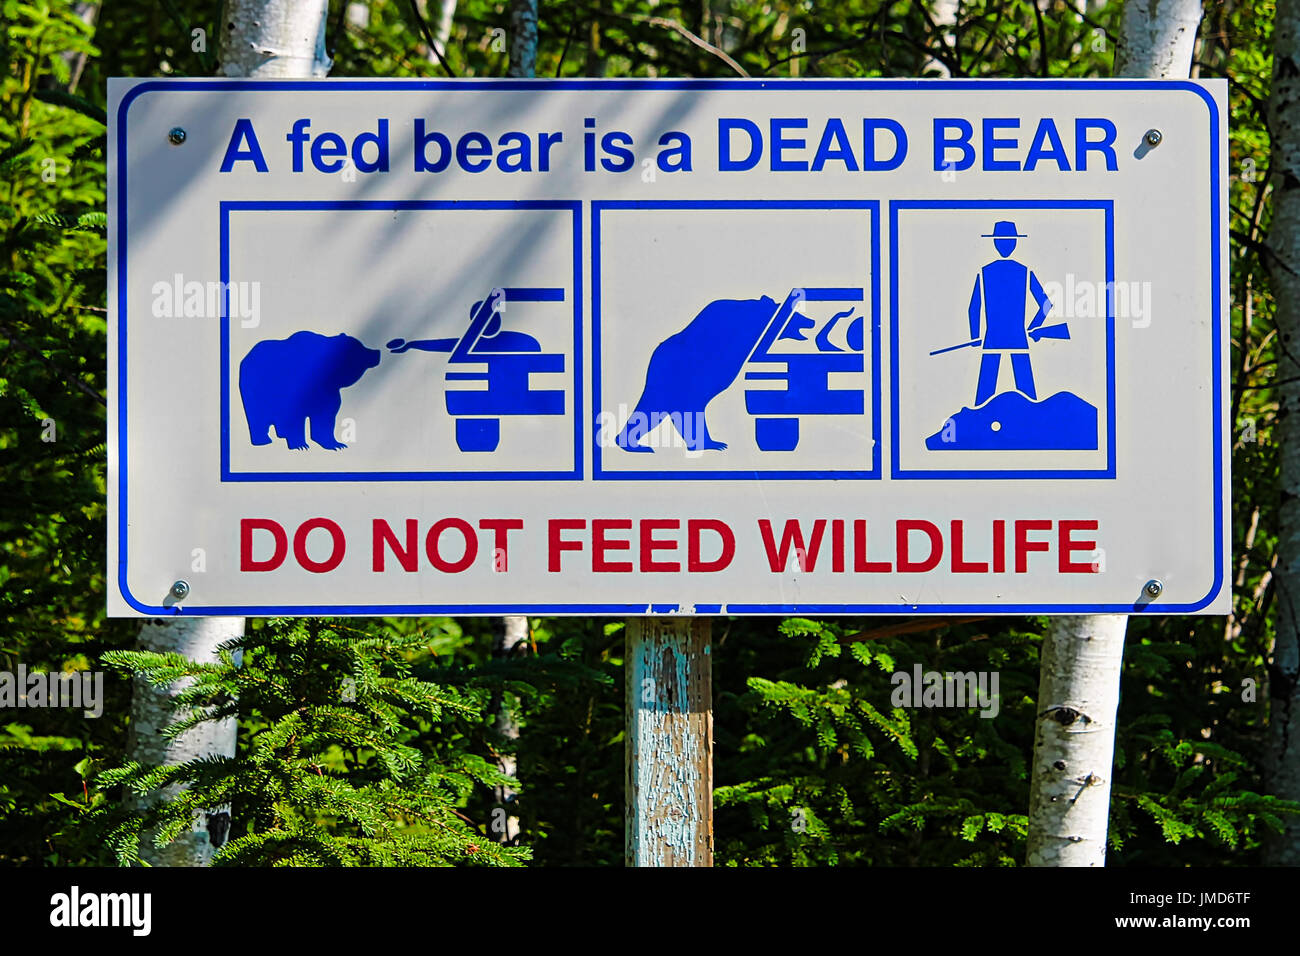 A fed bear is a dead bear, do not feed wildlife sign. Stock Photo